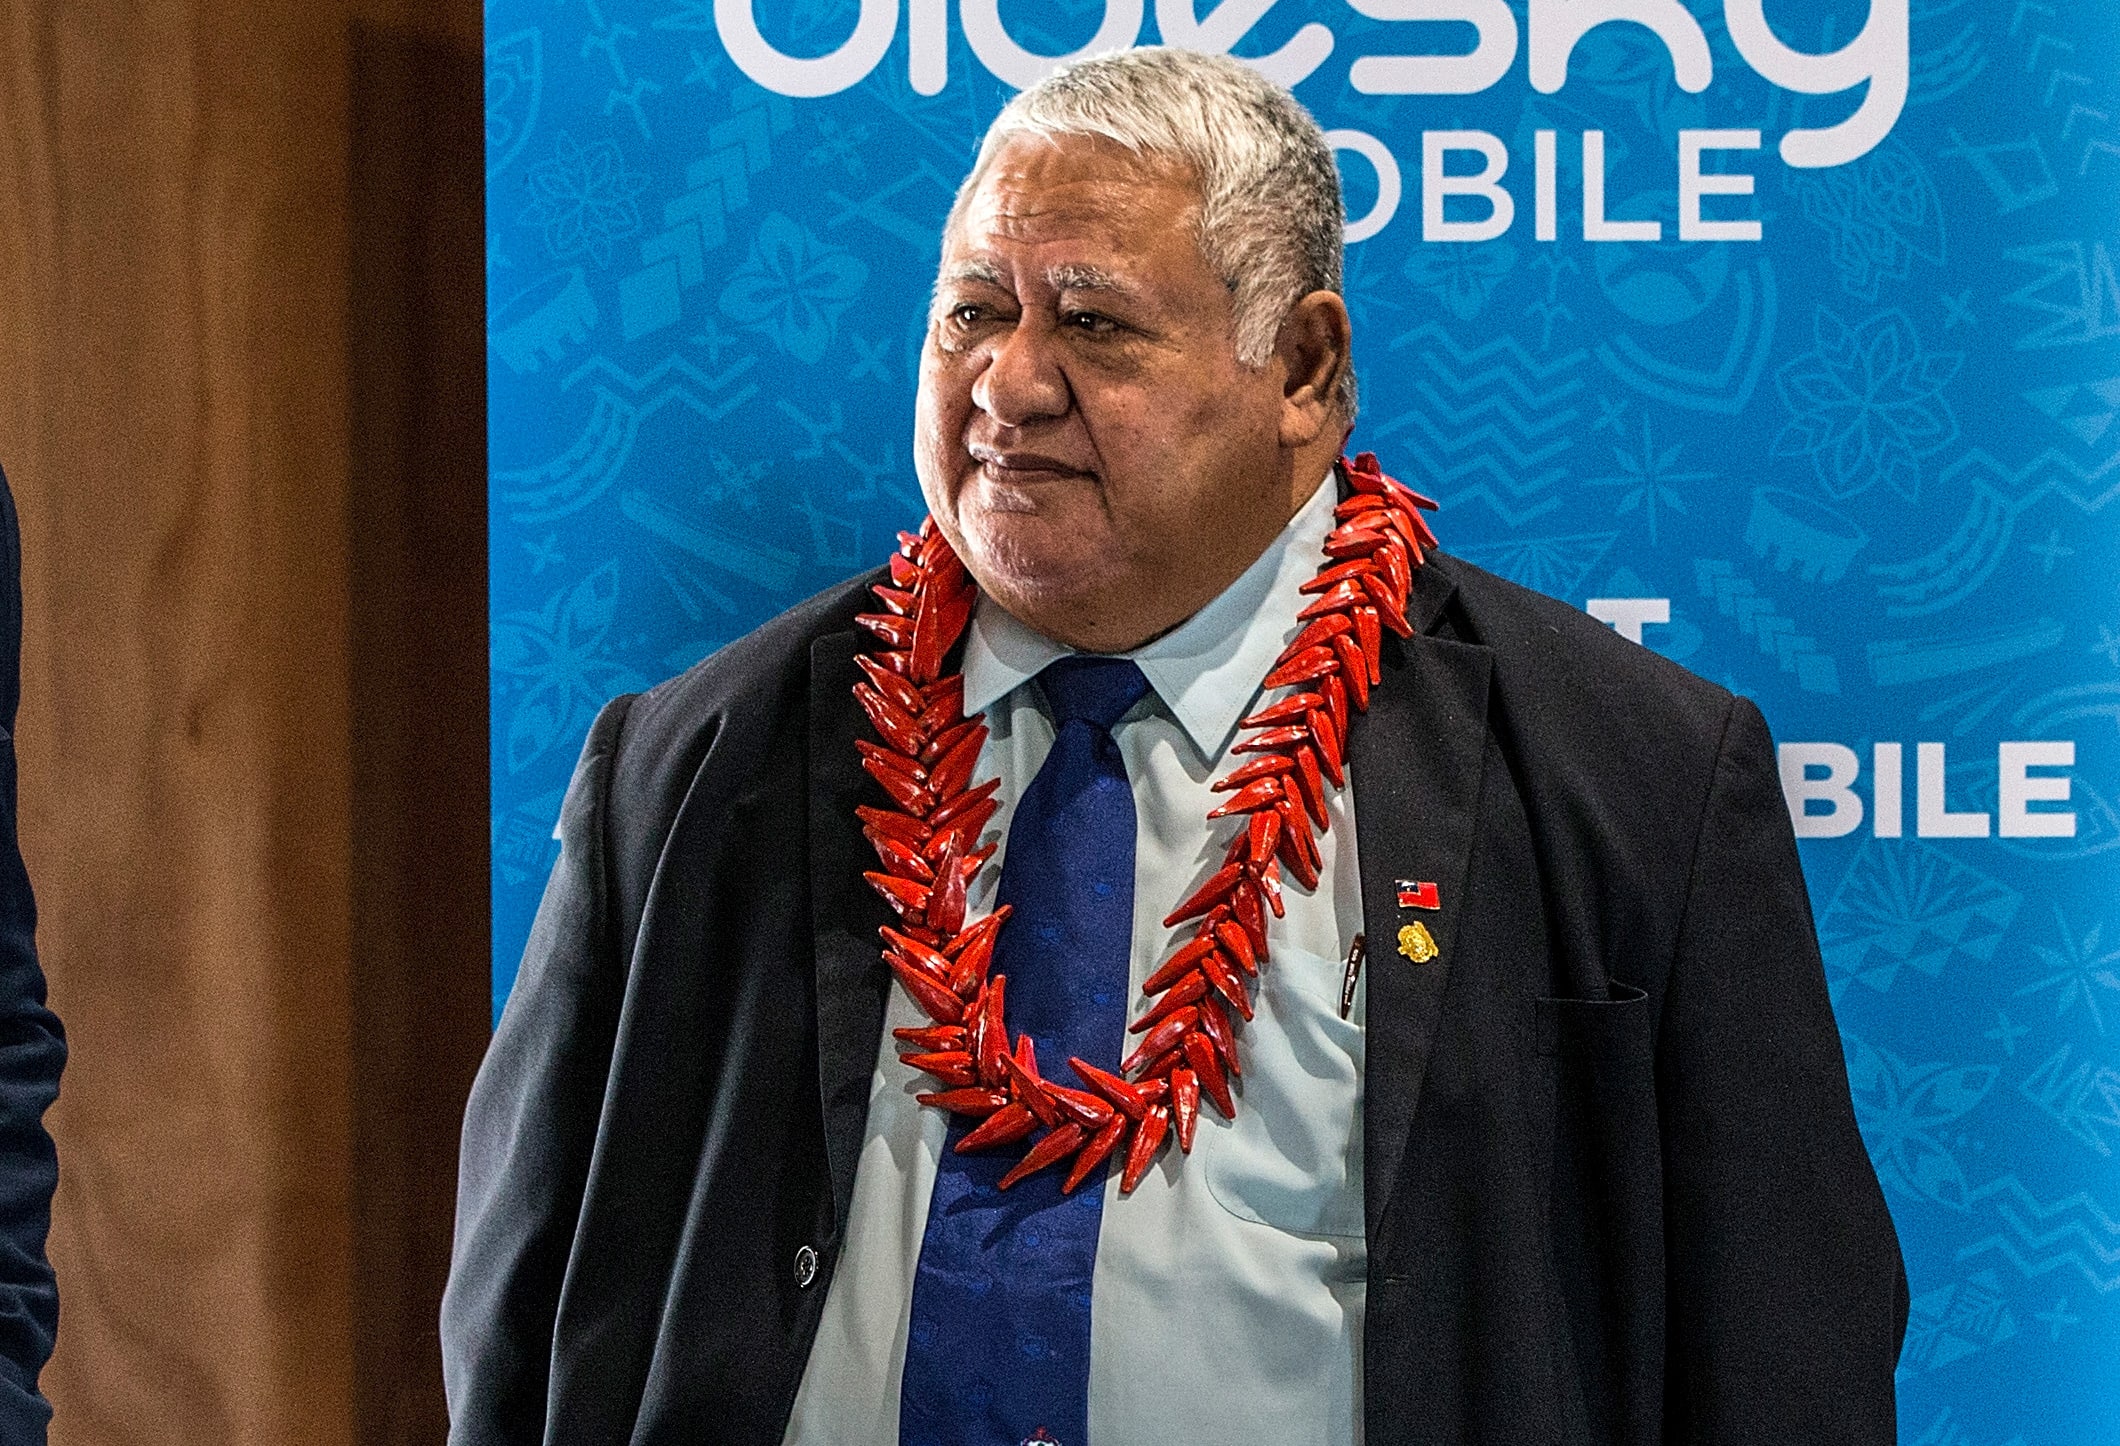 Sir Michael Jones and Samoa Prime Minister Tuilaepa Sailele Malielegaoi in 2017.